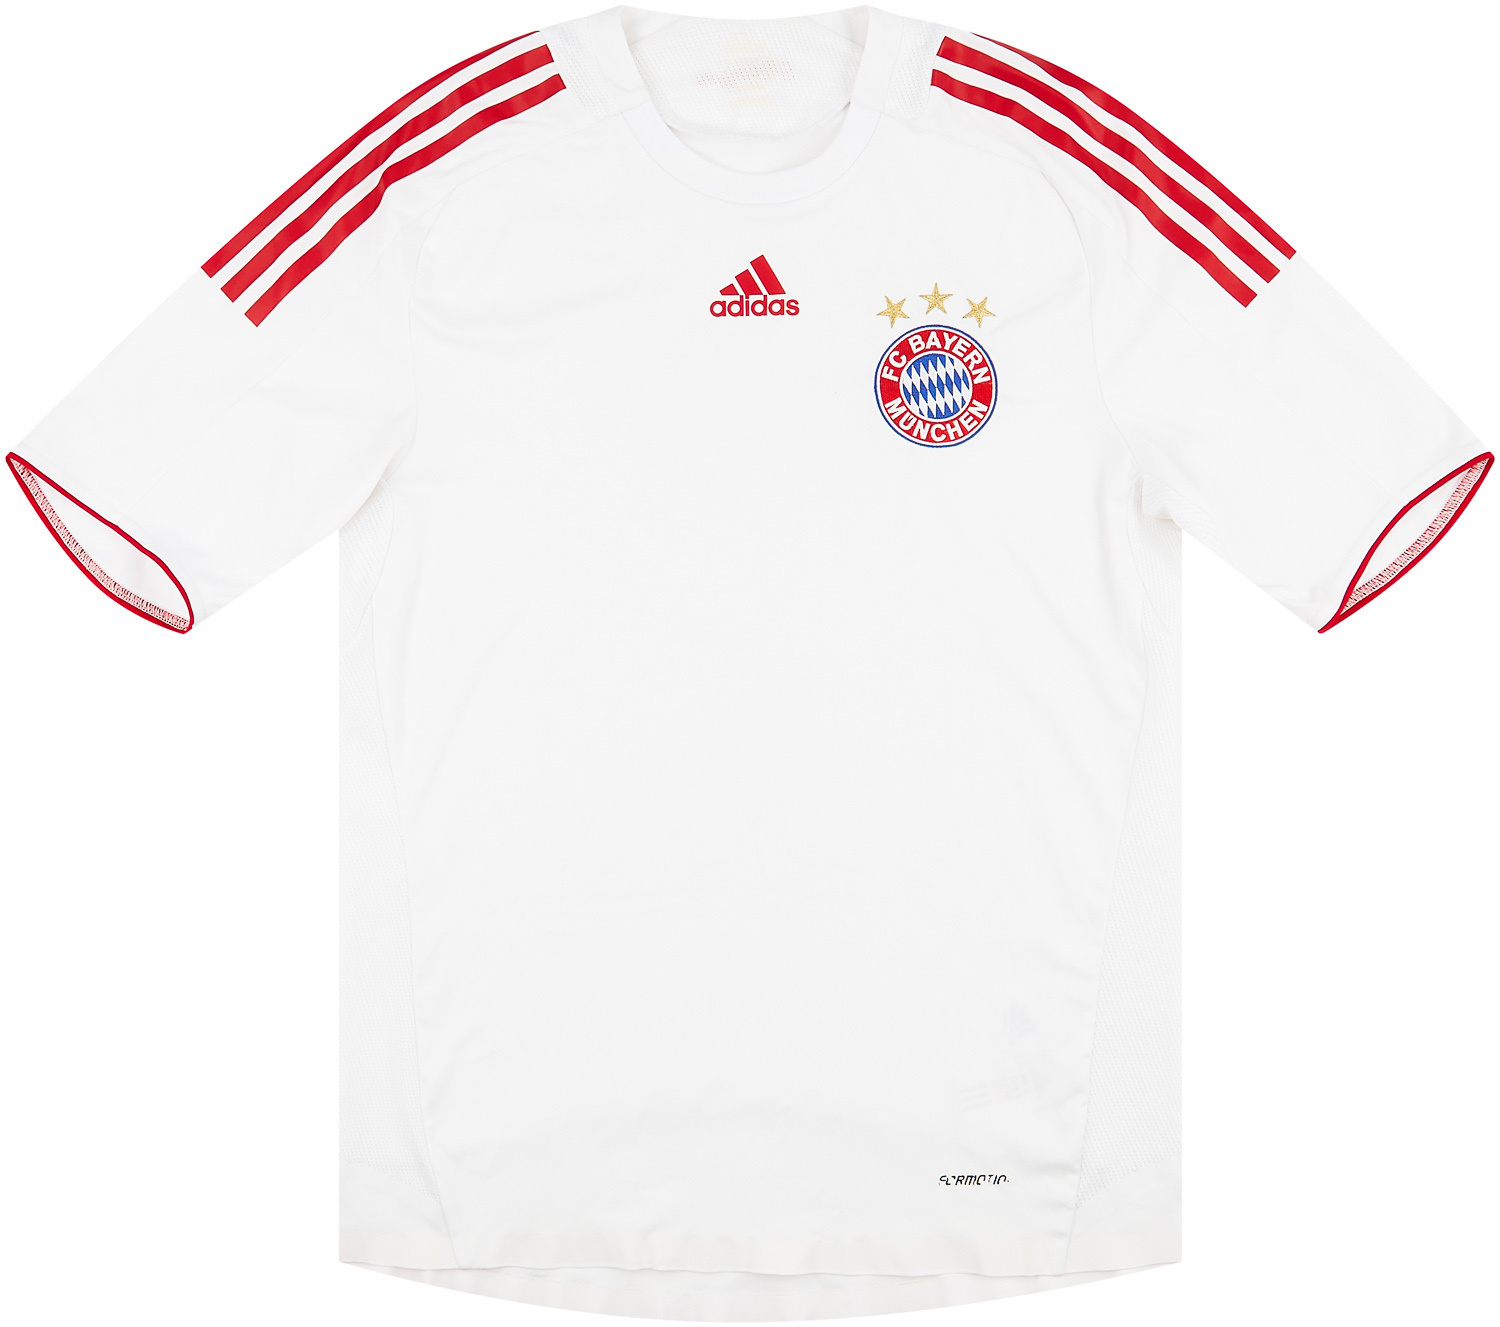 2008-09 Bayern Munich Player Issue Third Shirt - 9/10 - ()